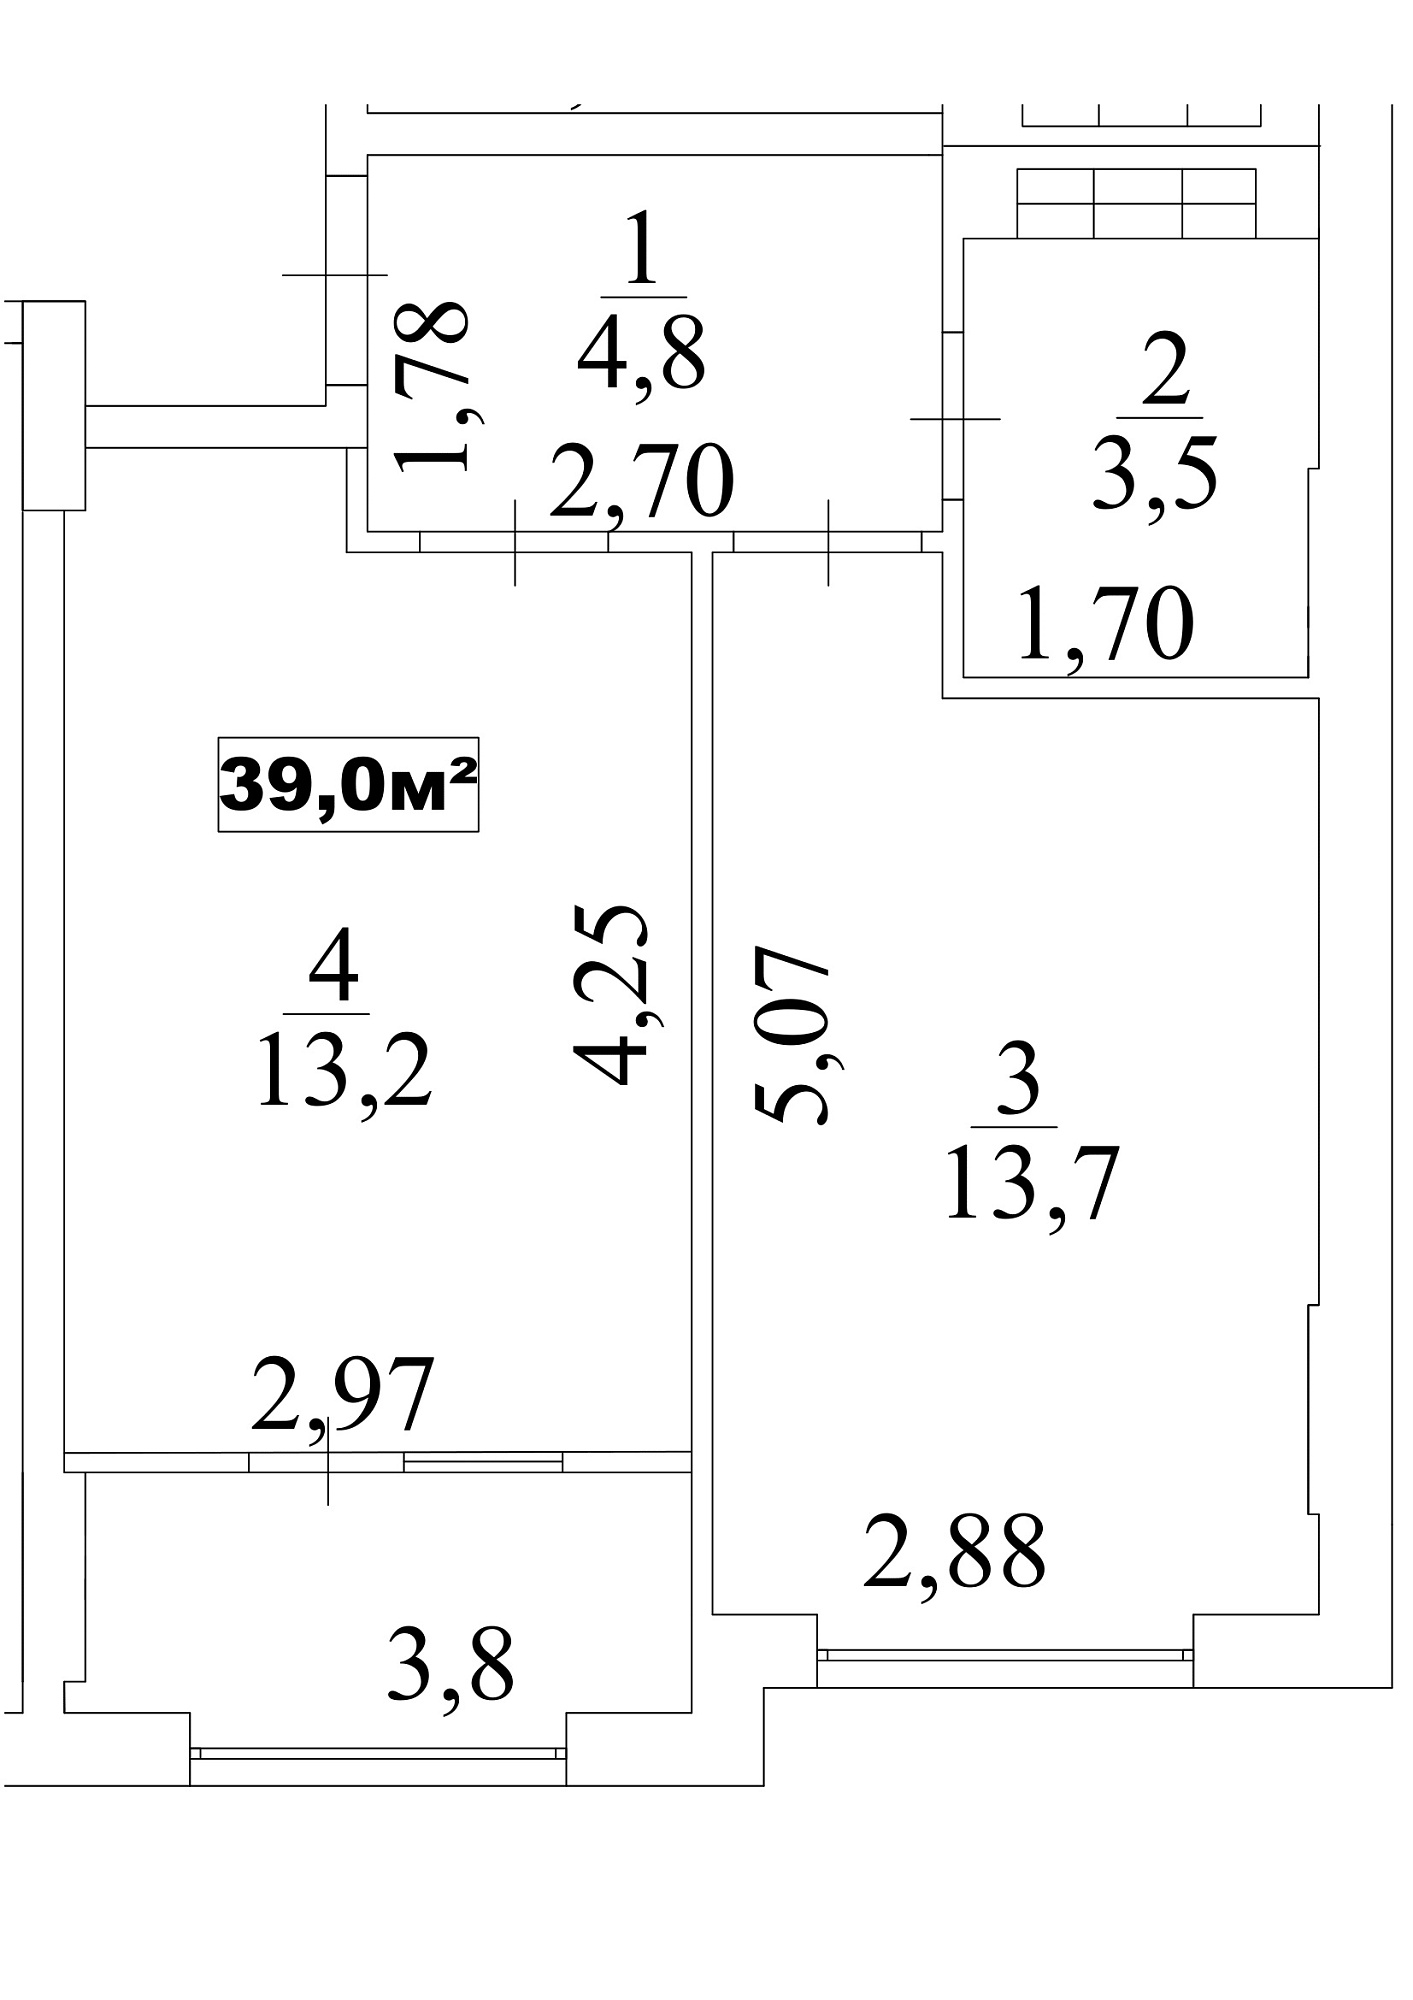 Планировка 1-к квартира площей 39м2, AB-10-09/0079в.